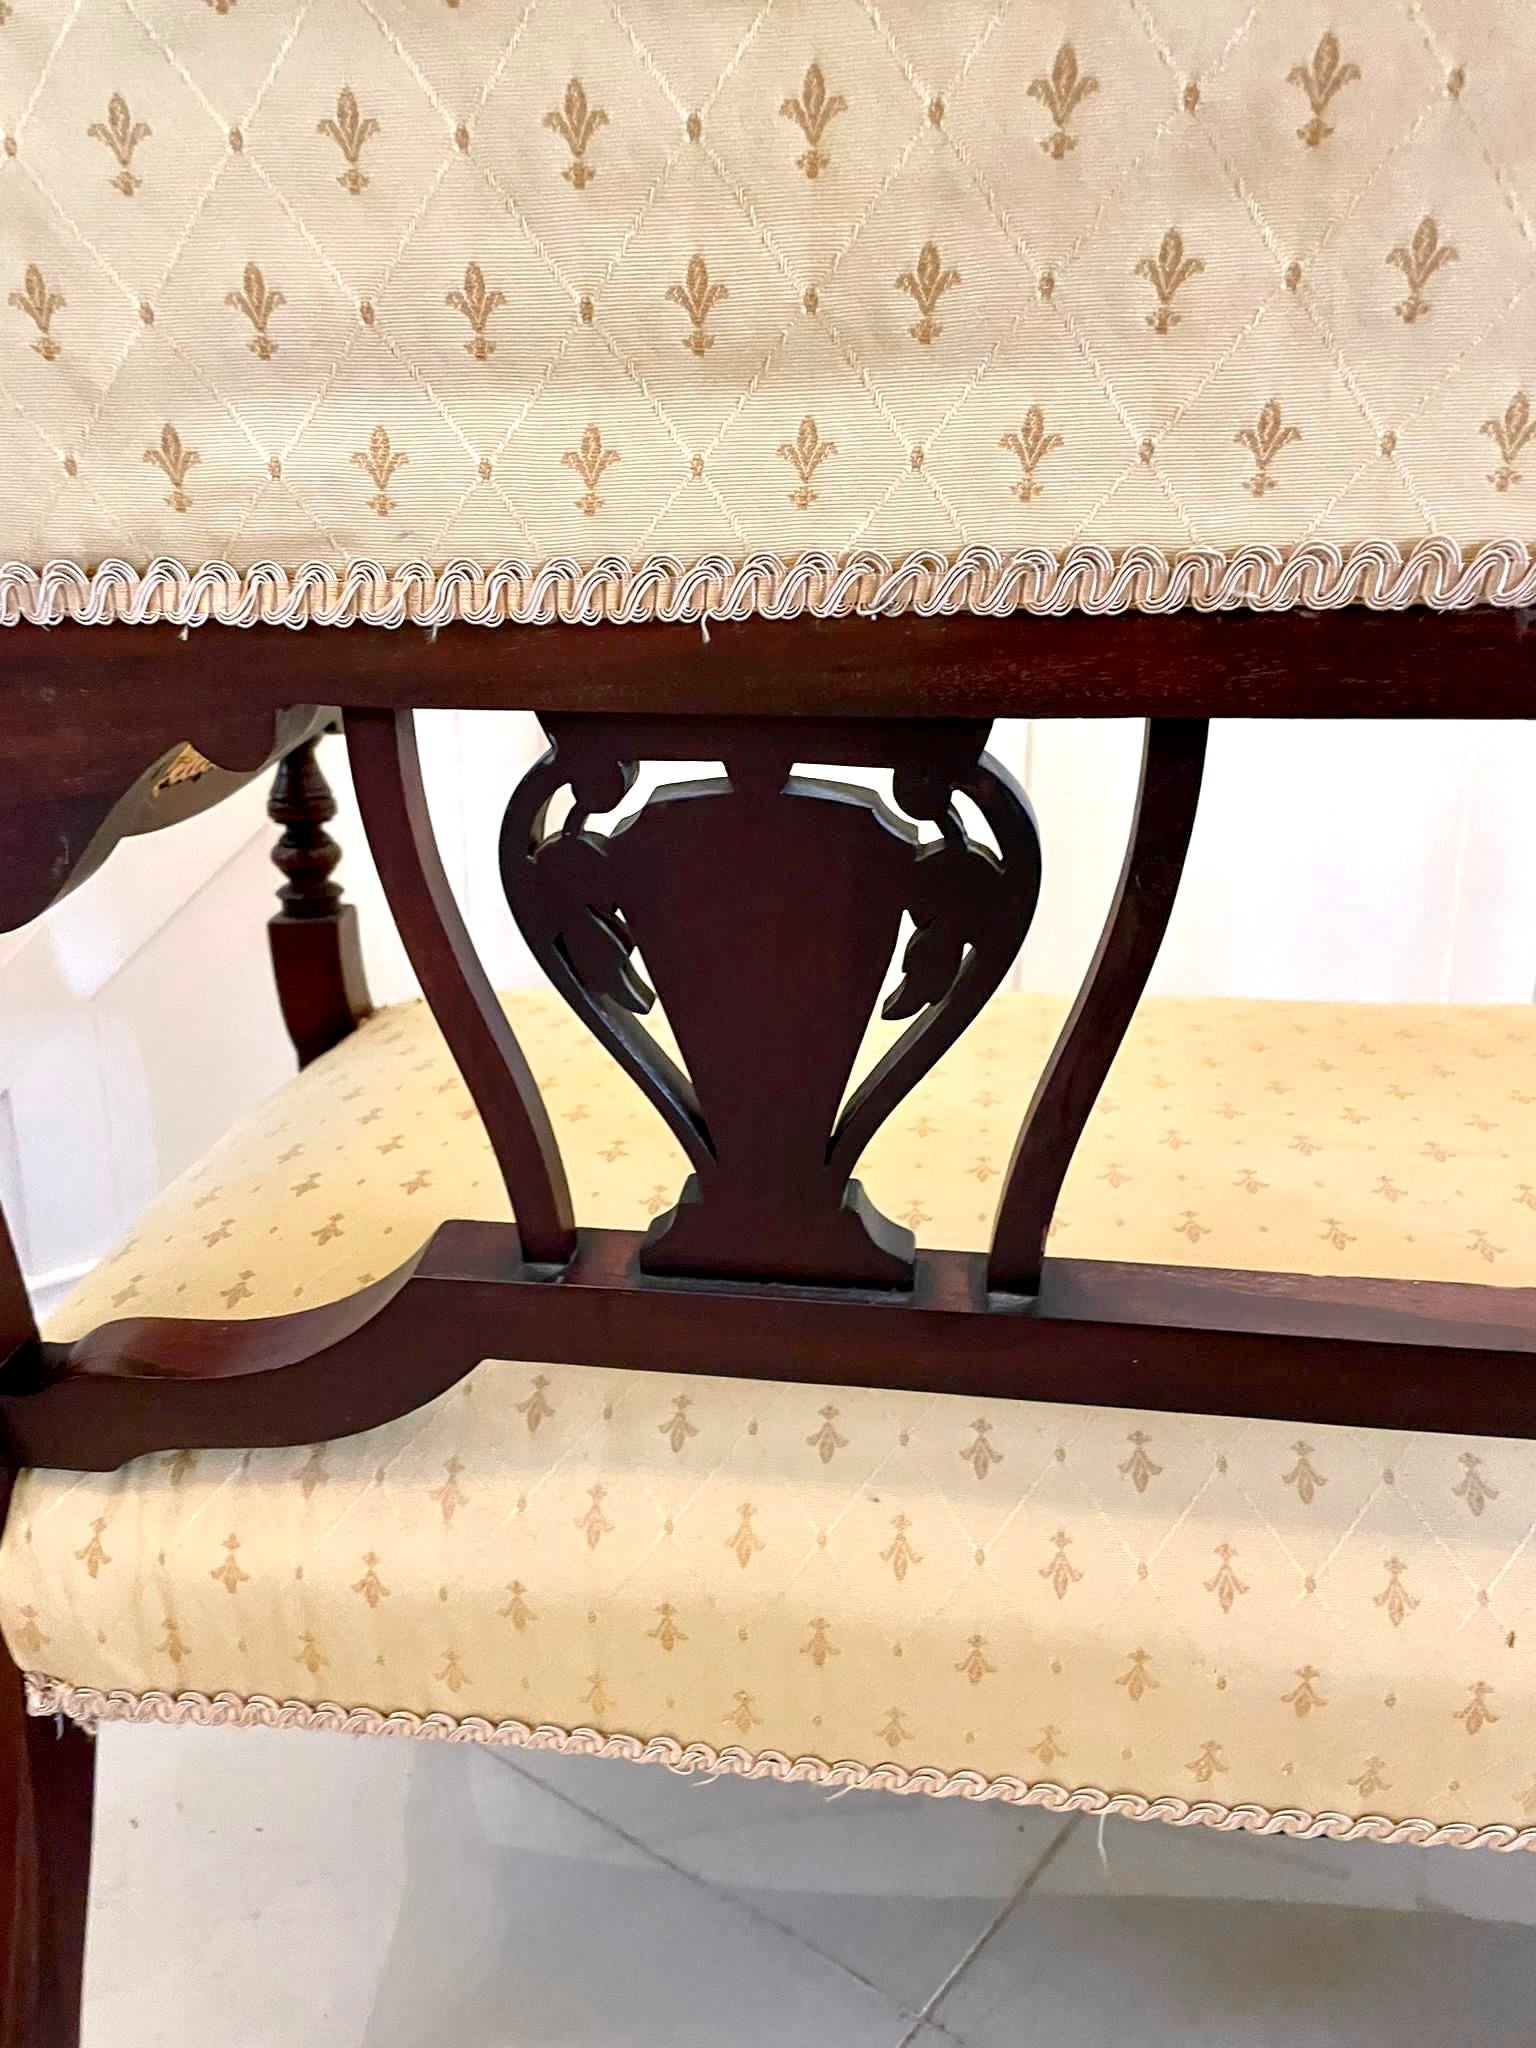 Antike viktorianische Qualität Intarsien Mahagoni Sofa mit einer Serpentine vor Sitz, drei Intarsien Mahagoni geformte Splats, geformte offene Arme mit gedrehten Stützen stehen auf geformten Intarsien Mahagoni Cabriole Beine auf der Vorderseite aus